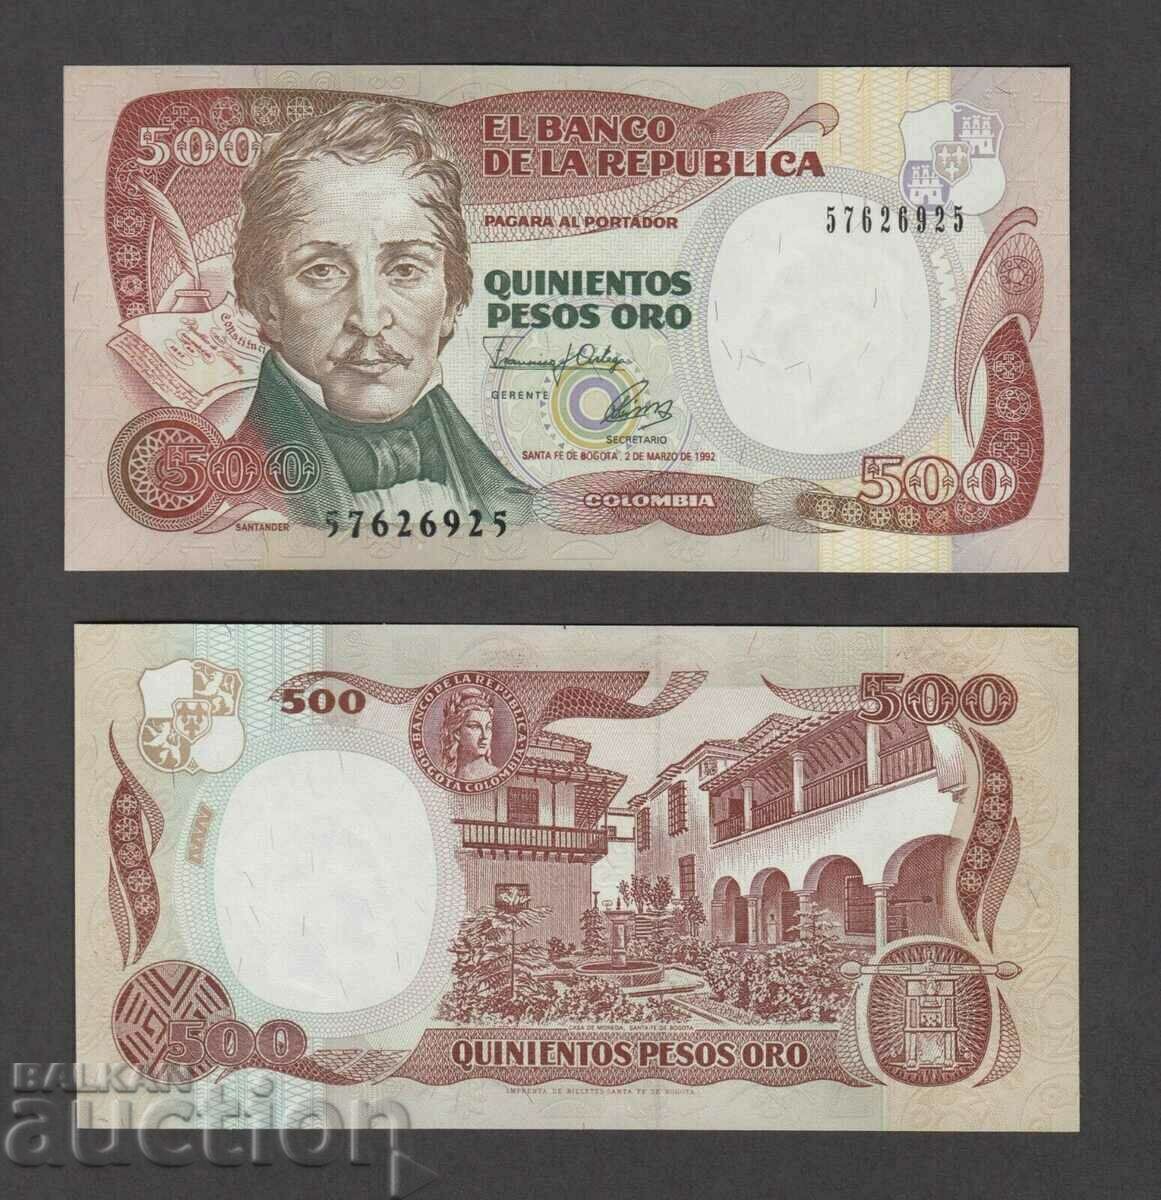 ΚΟΛΟΜΒΙΑ, 500 πέσος, 1992, UNC